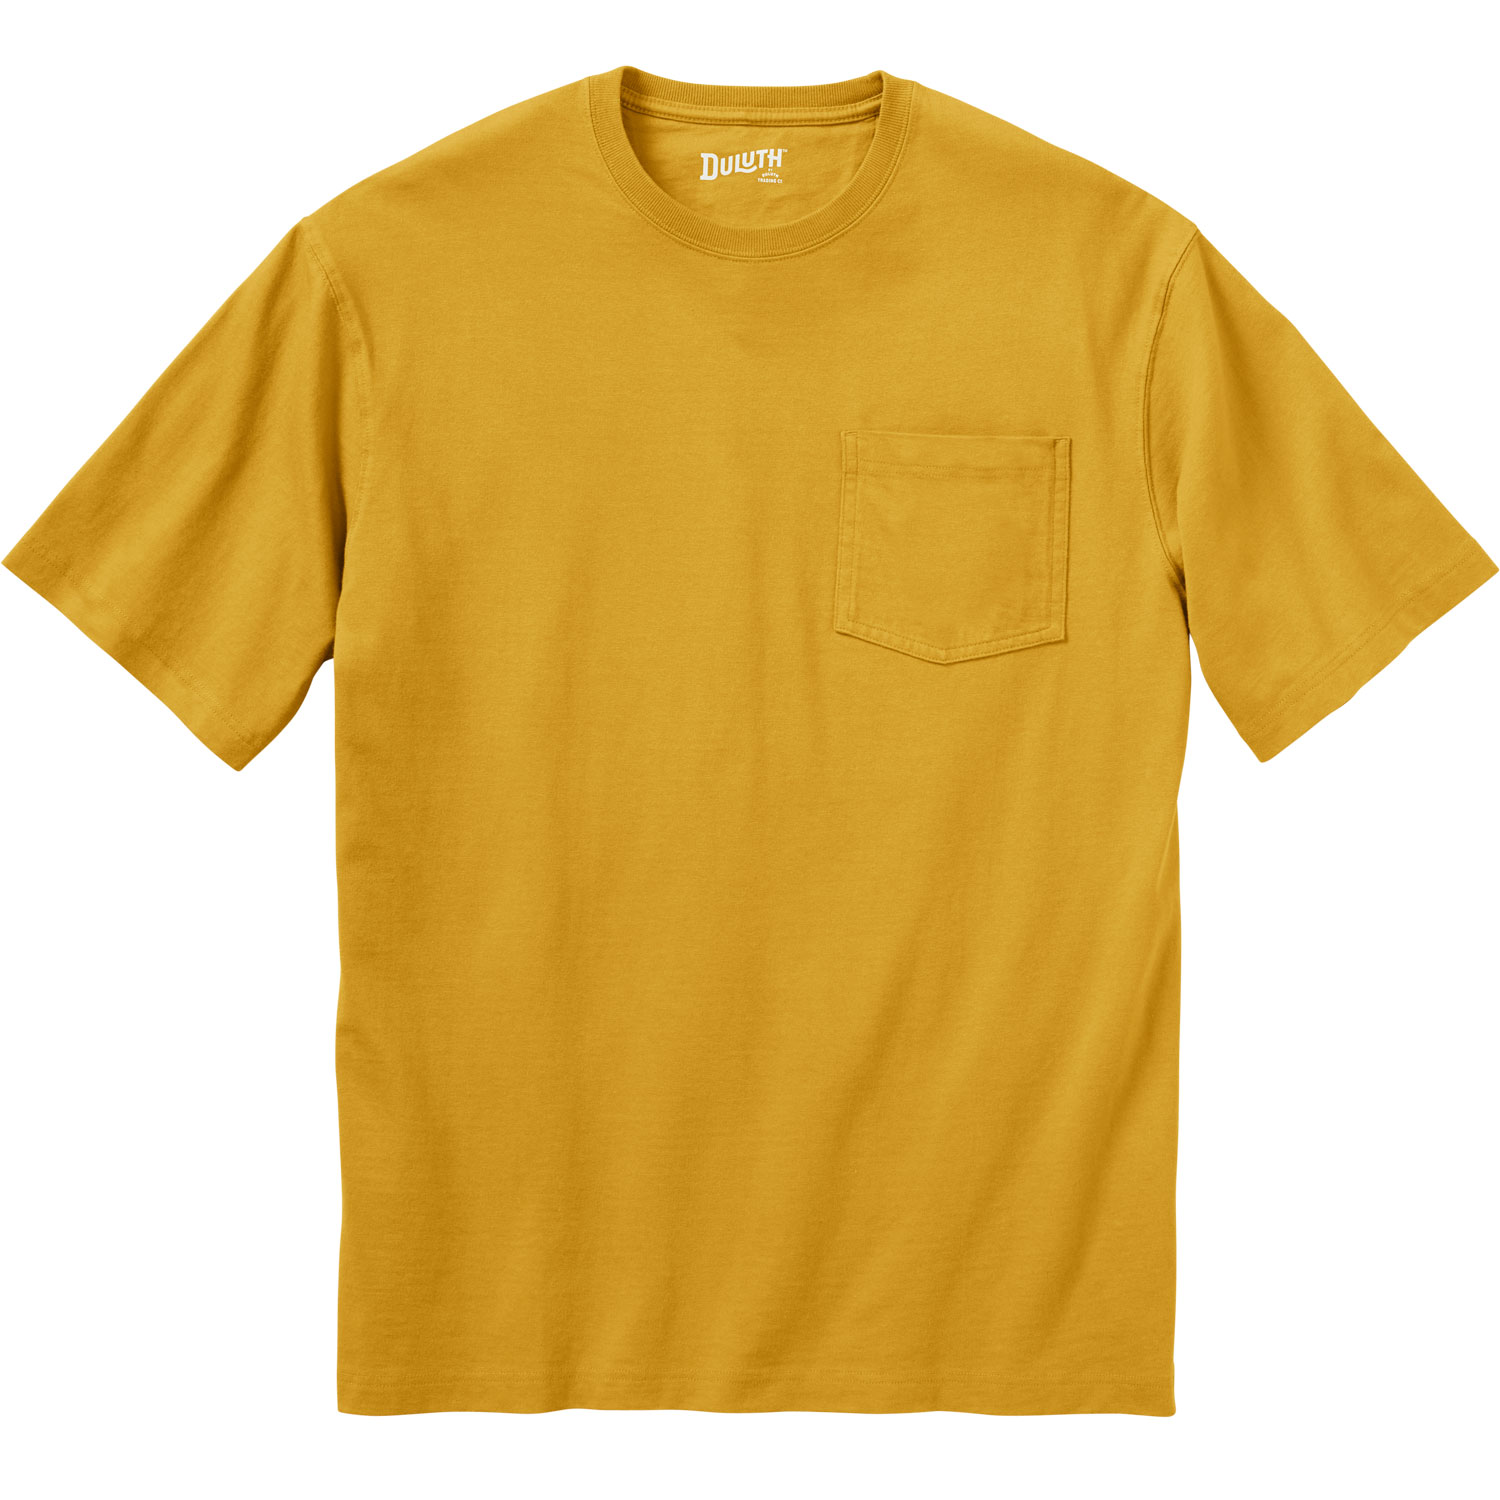 Huk Men's Brass T-Shirt, XL, Wedgewood